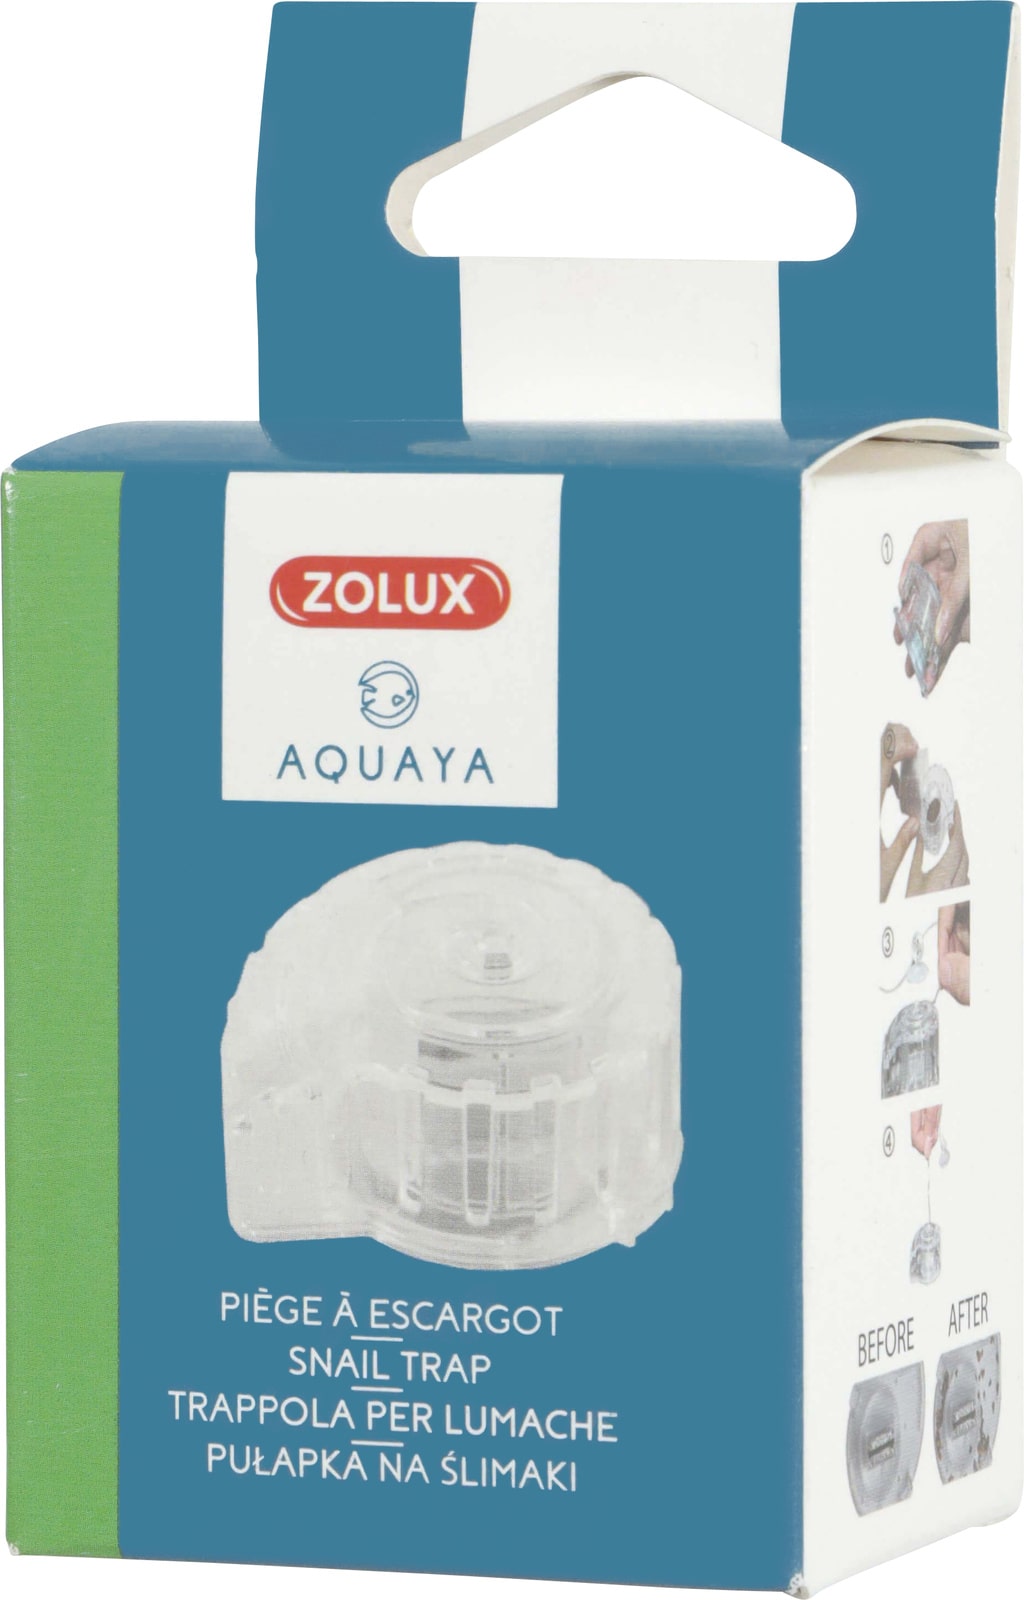 zolux-aquaya-piege-a-escargots-tres-efficace-pour-aquarium